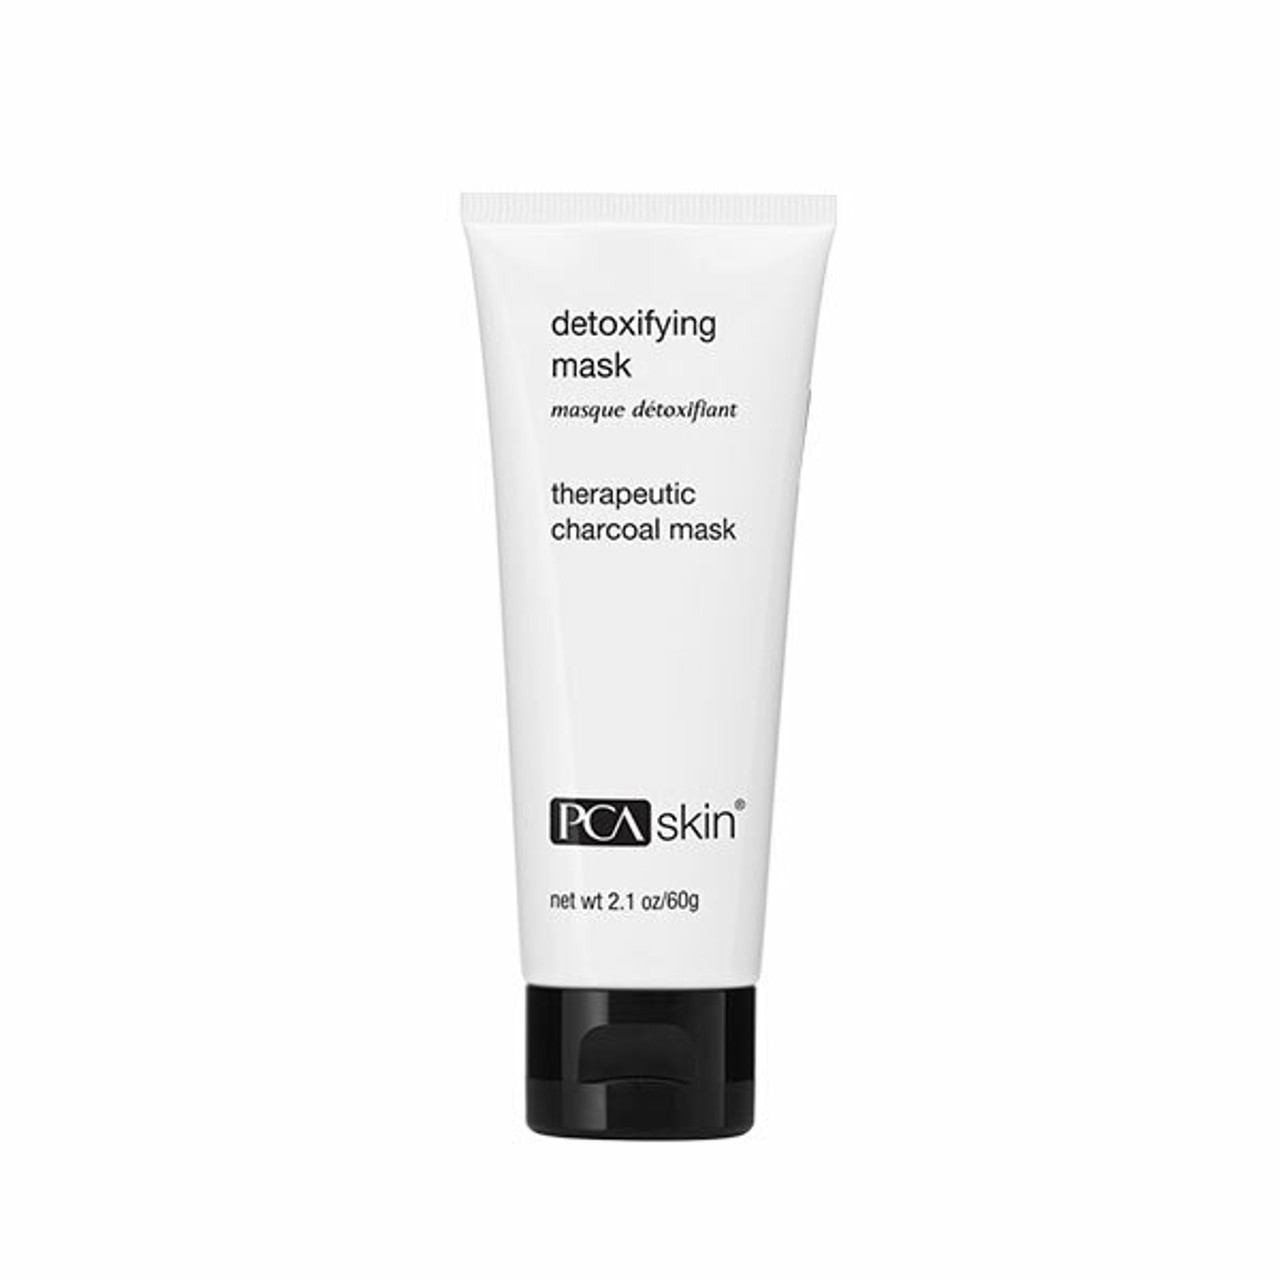 PCA Skin Detoxifying Mask - 2.1 oz - On Sale